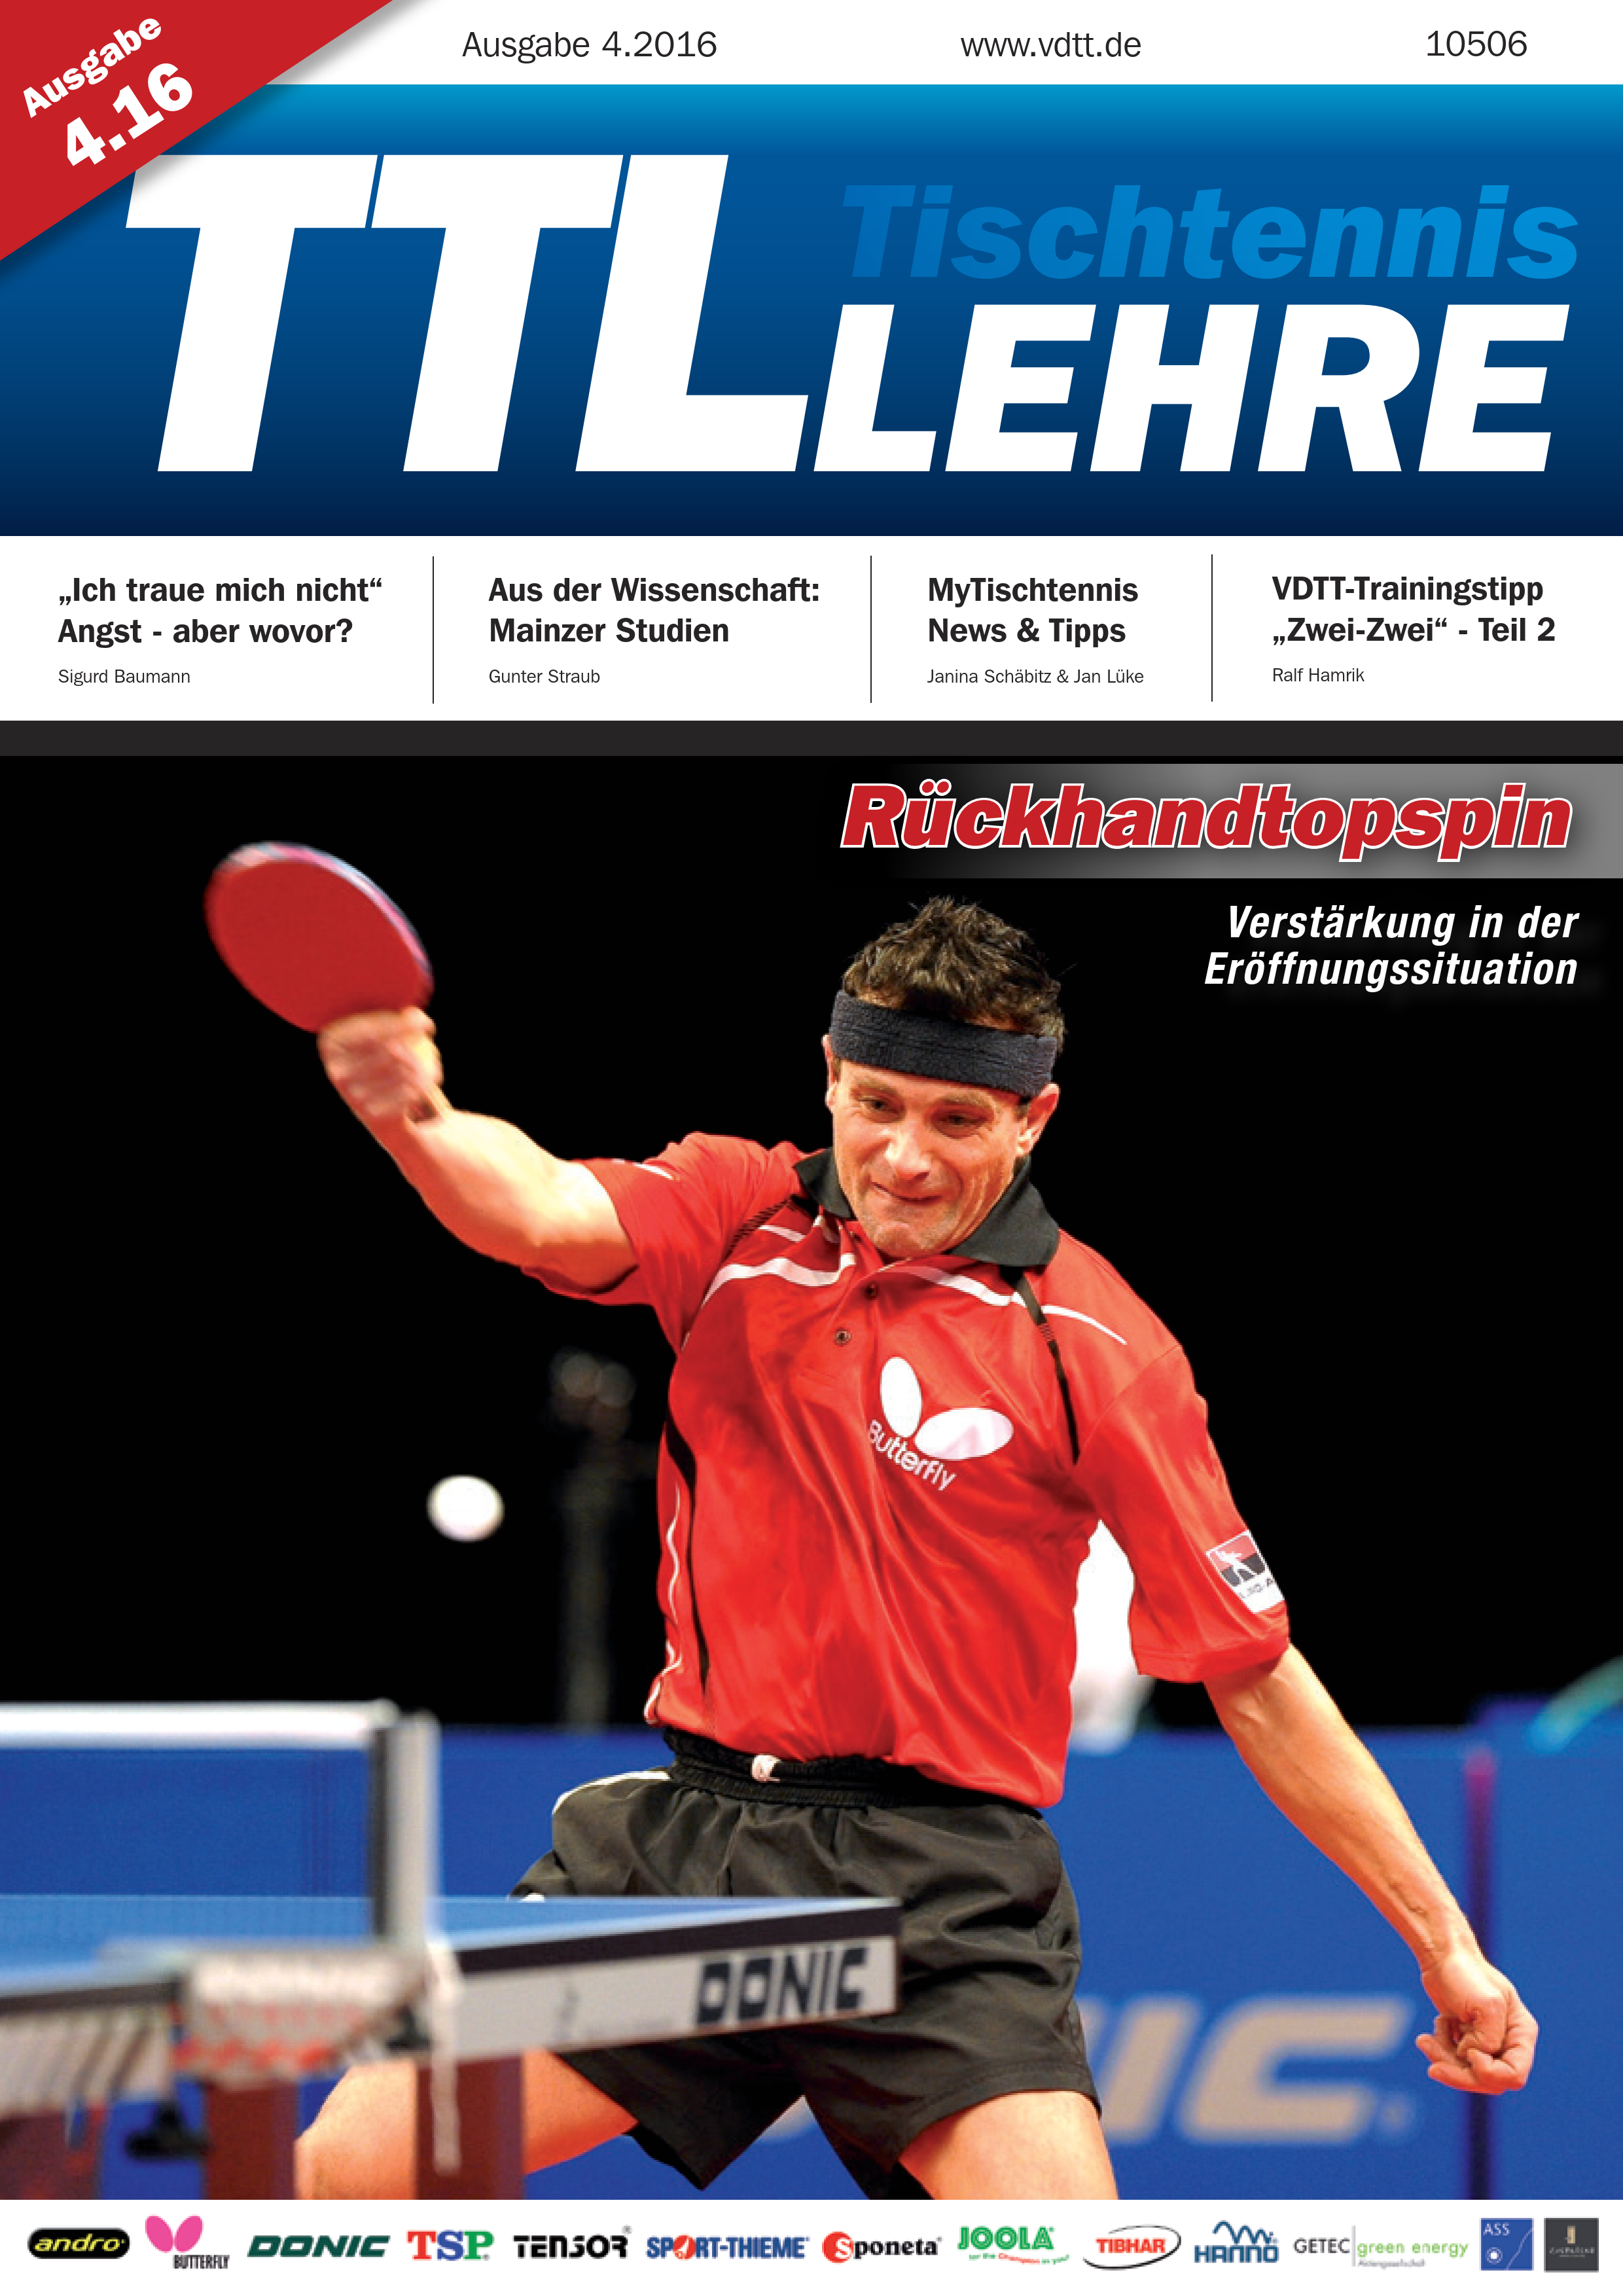 VDTT-Zeitschrift Tischtennislehre - Ausgabe: 2016-04